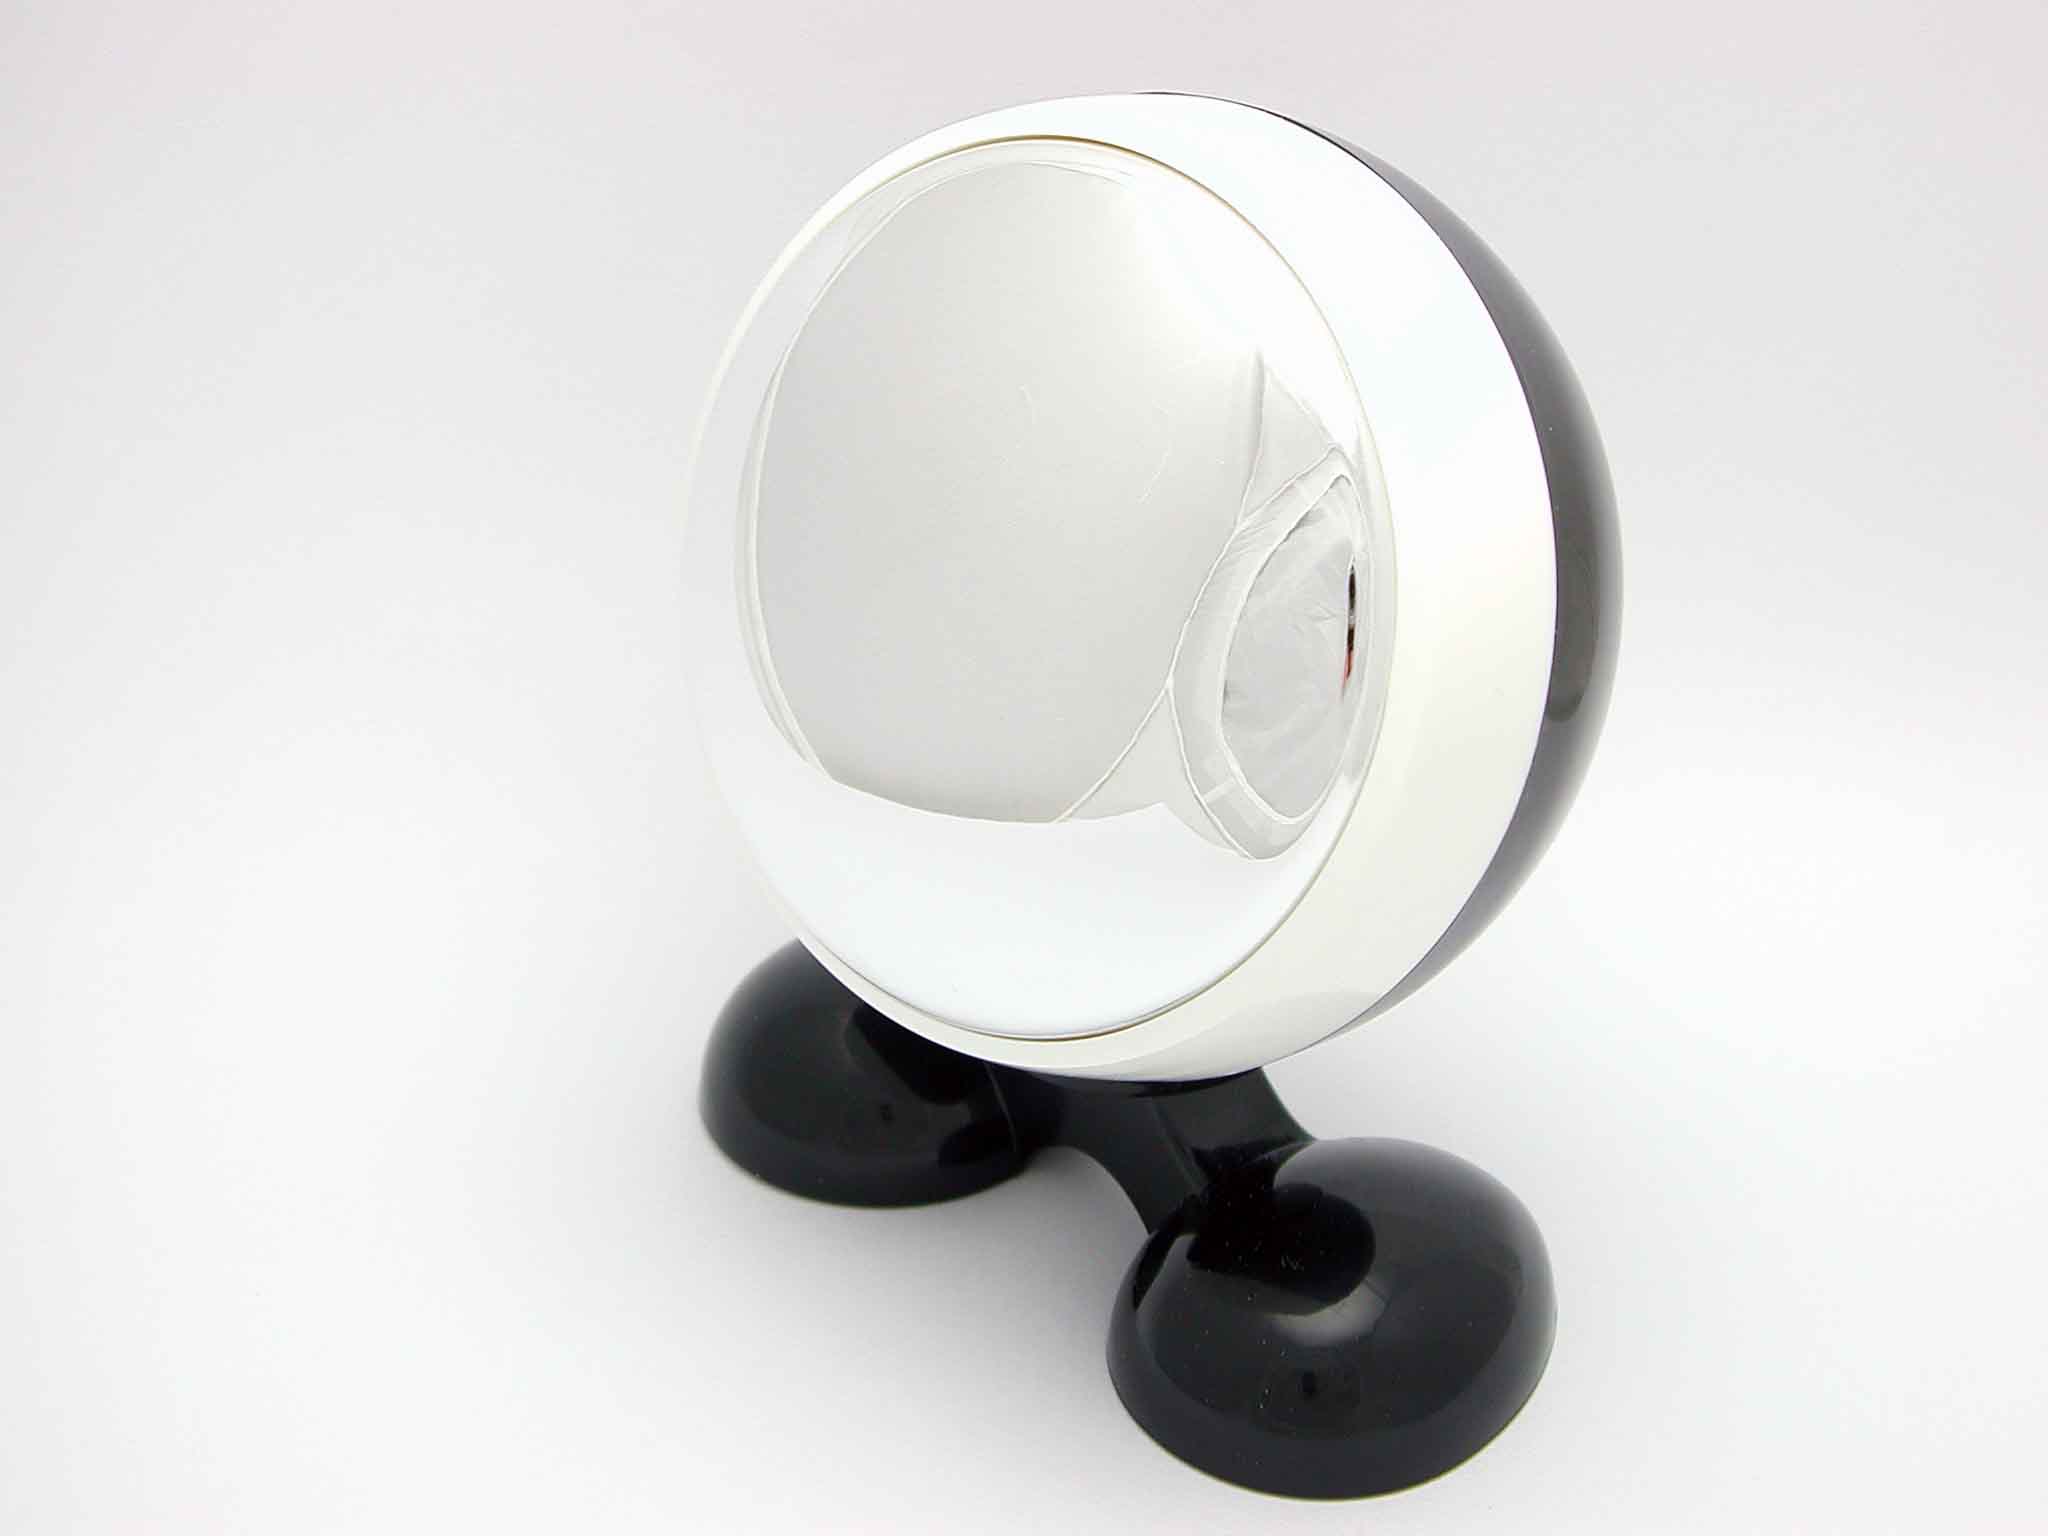 Unsere Artikel-Shape Mirror Ball mit Standfuß (Unsere Artikel-Shape Mirror Ball mit Standfuß)